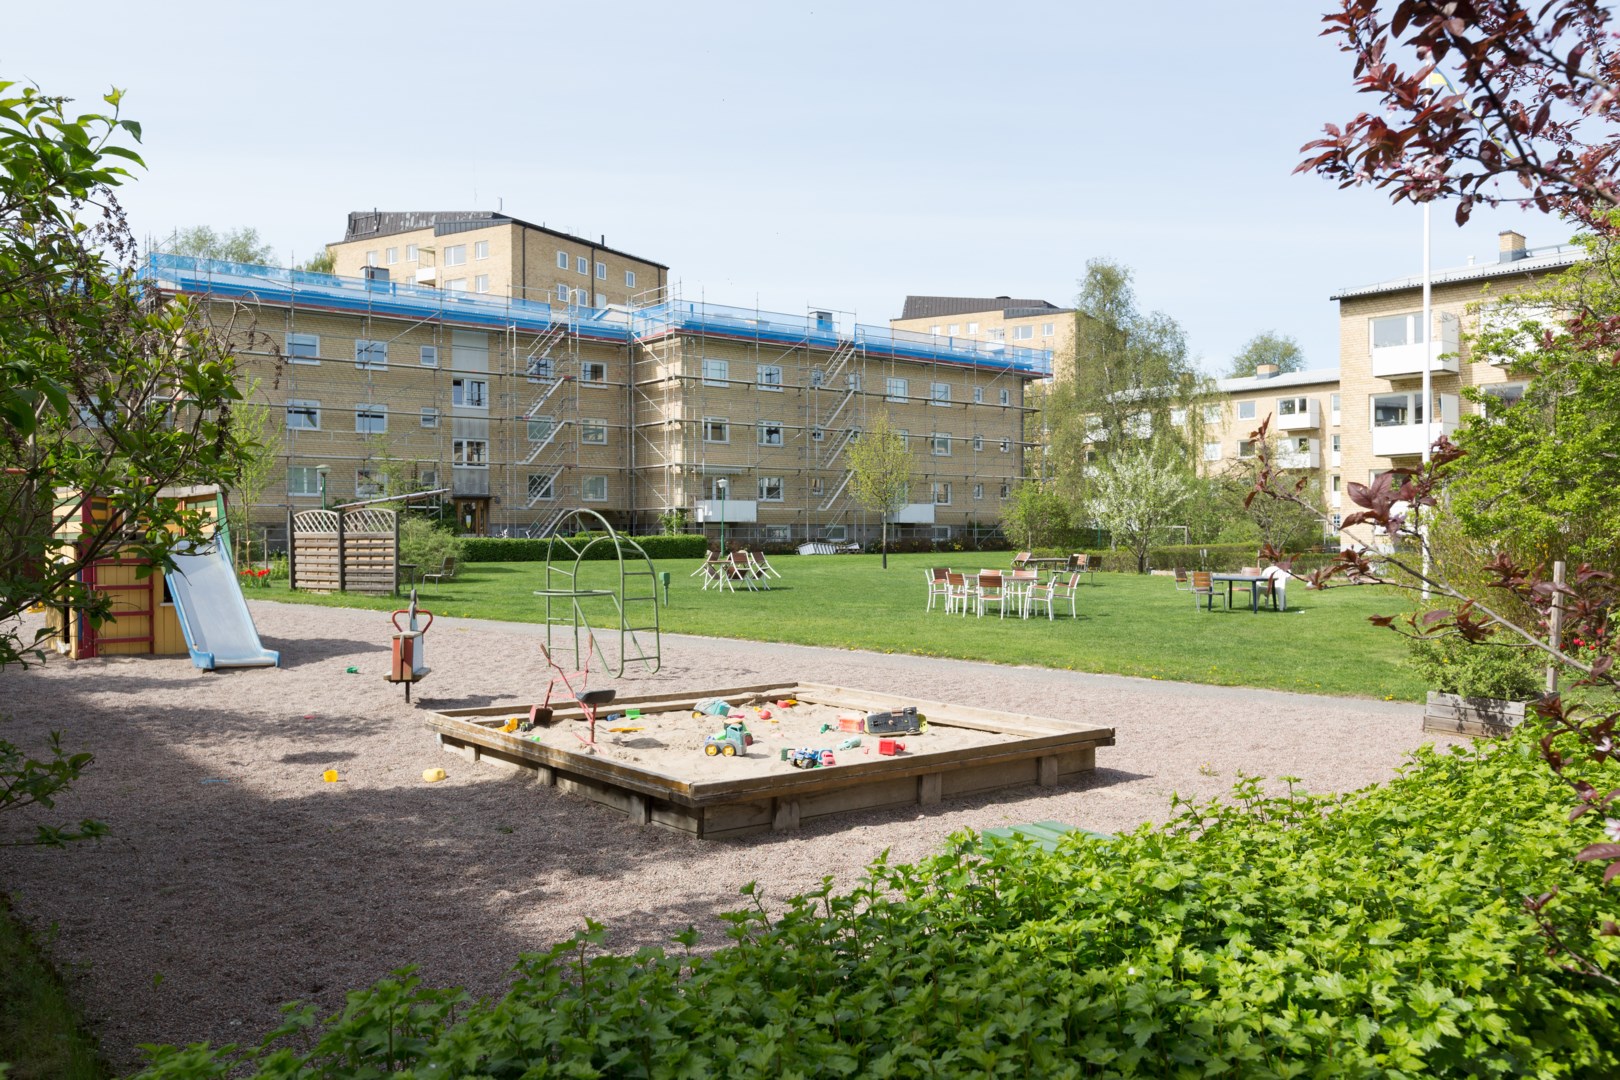 Bostadsbild från Ringgatan 45C, Kommande i Luthagen, Uppsala